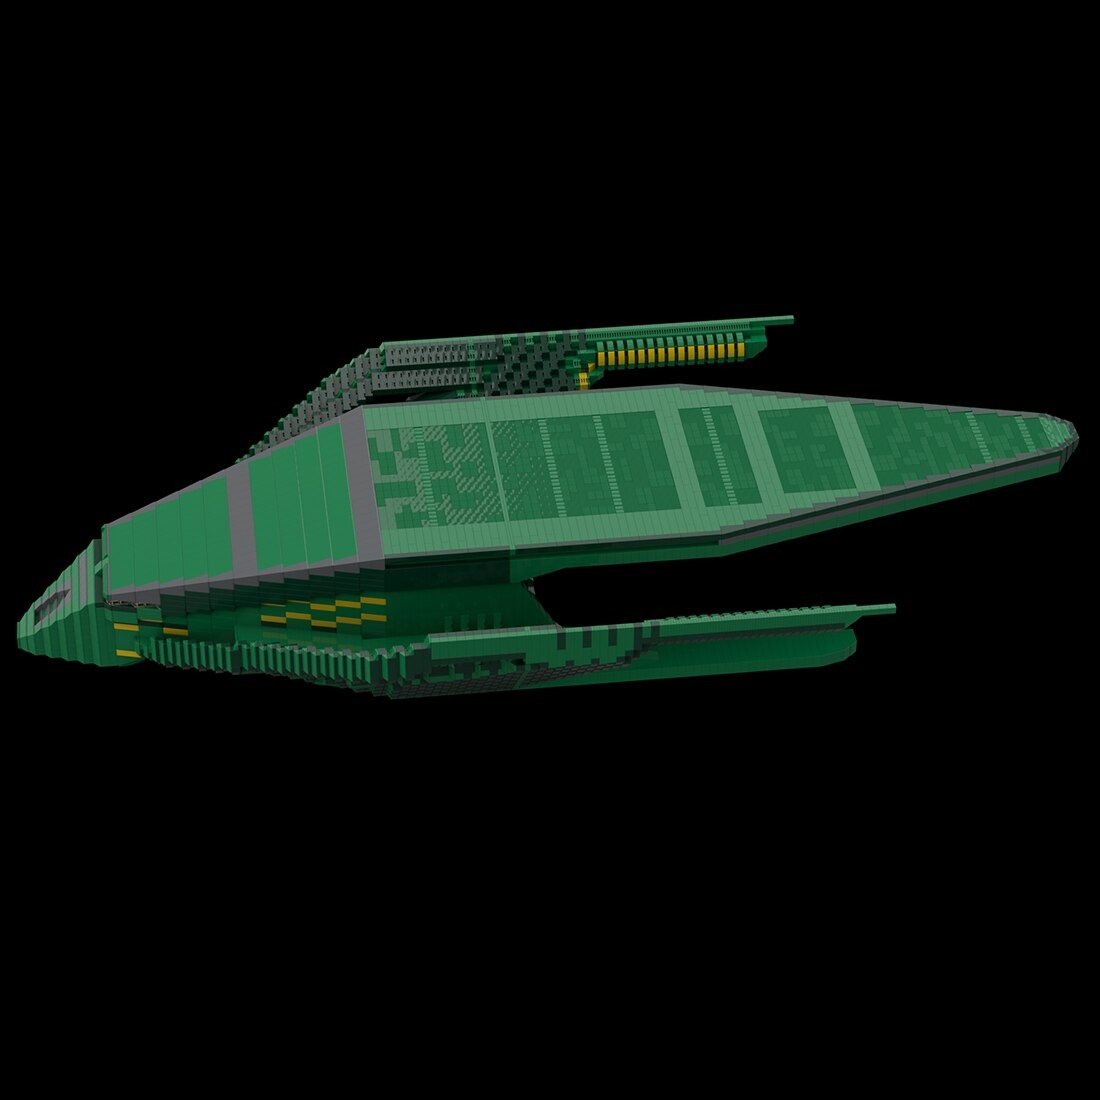 MOCBRICKLAND MOC-118495 Krill Destroyer